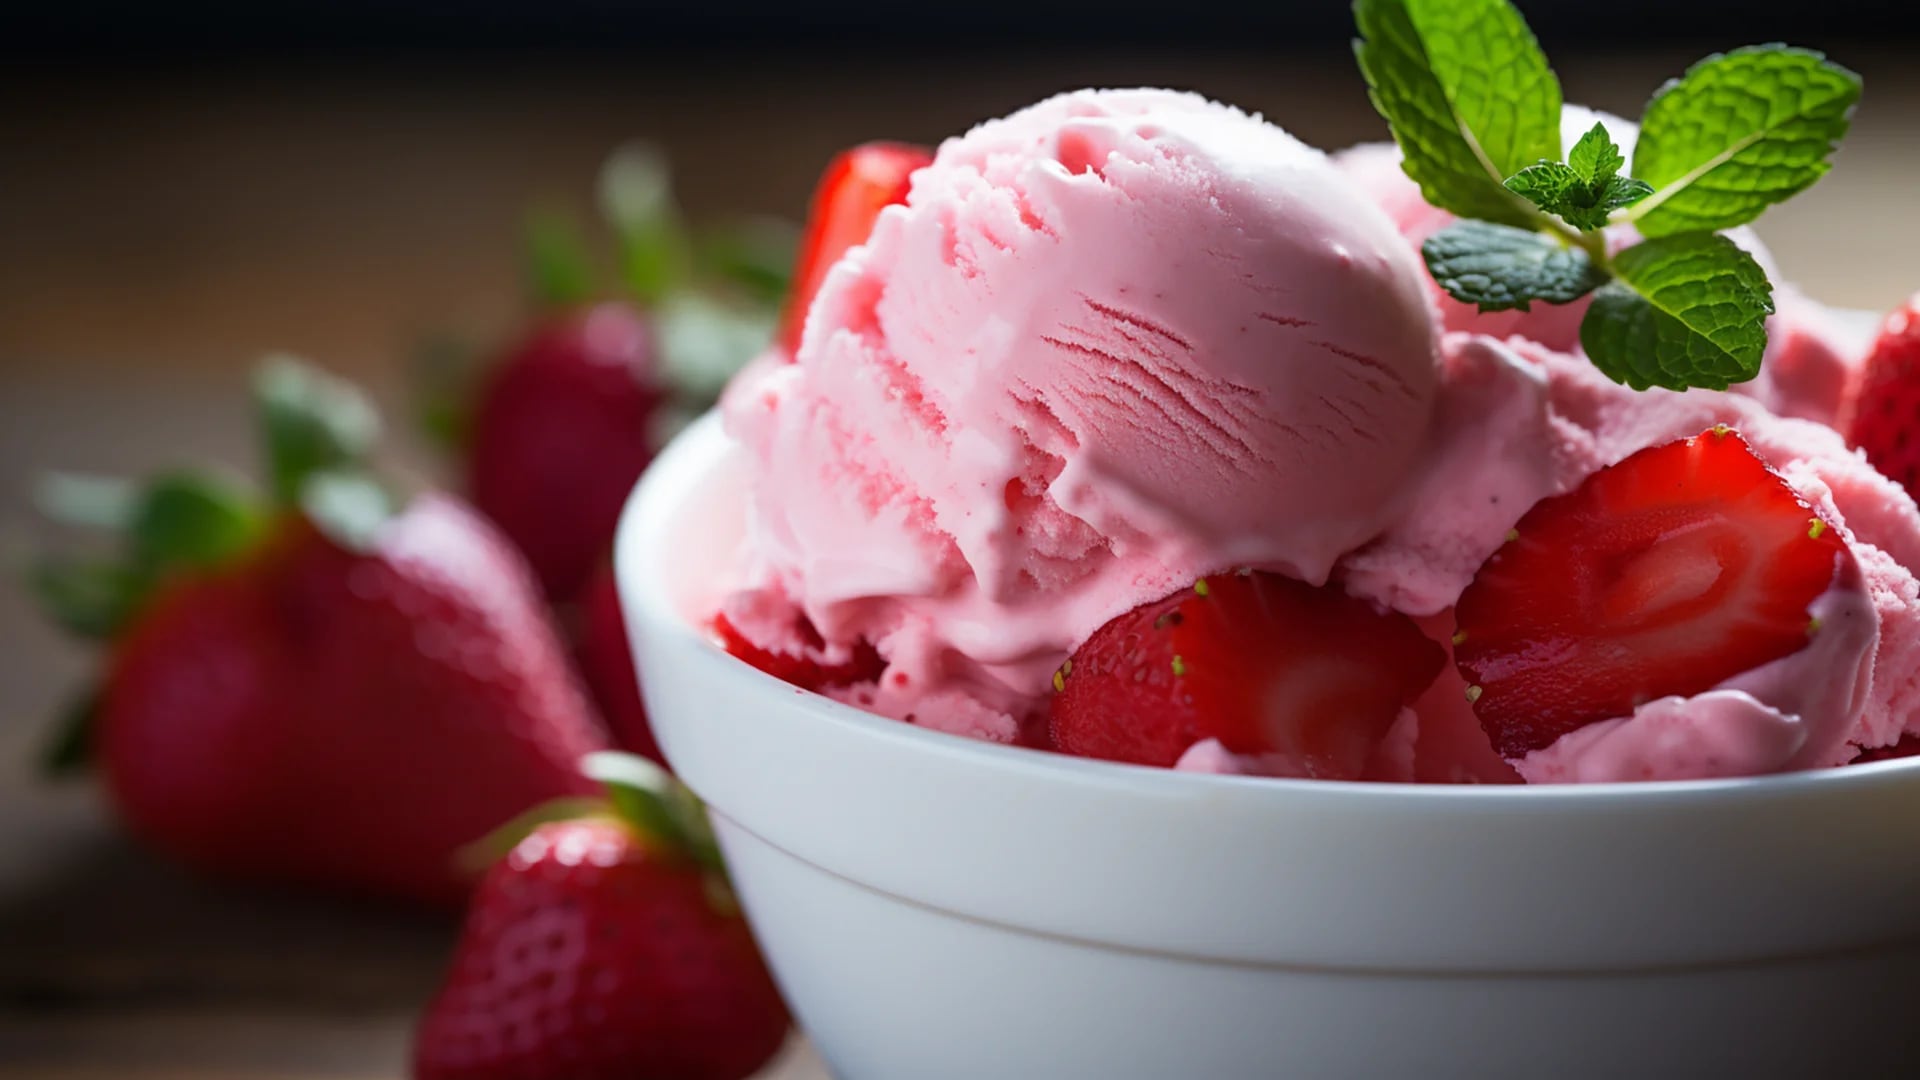 Dulzura de frutilla y suavidad de vainilla: un helado que es puro placer refrescante (Imagen ilustrativa Infobae)